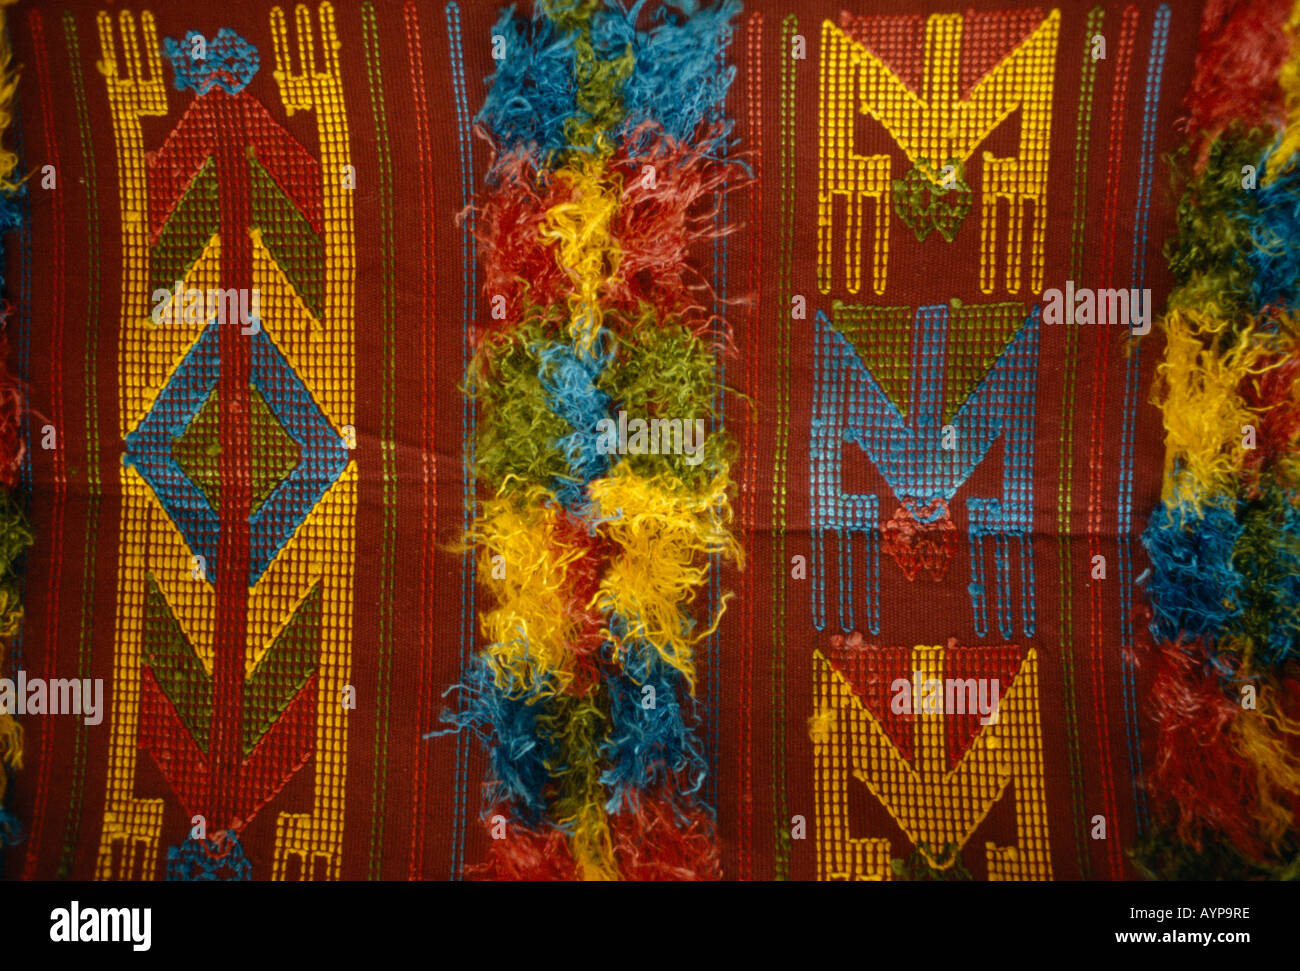 Le Nigeria Afrique de l'Itagbe détail de textiles tissés pour poser l'épaule culte Ogboni membres de la tribu Yoruba Banque D'Images